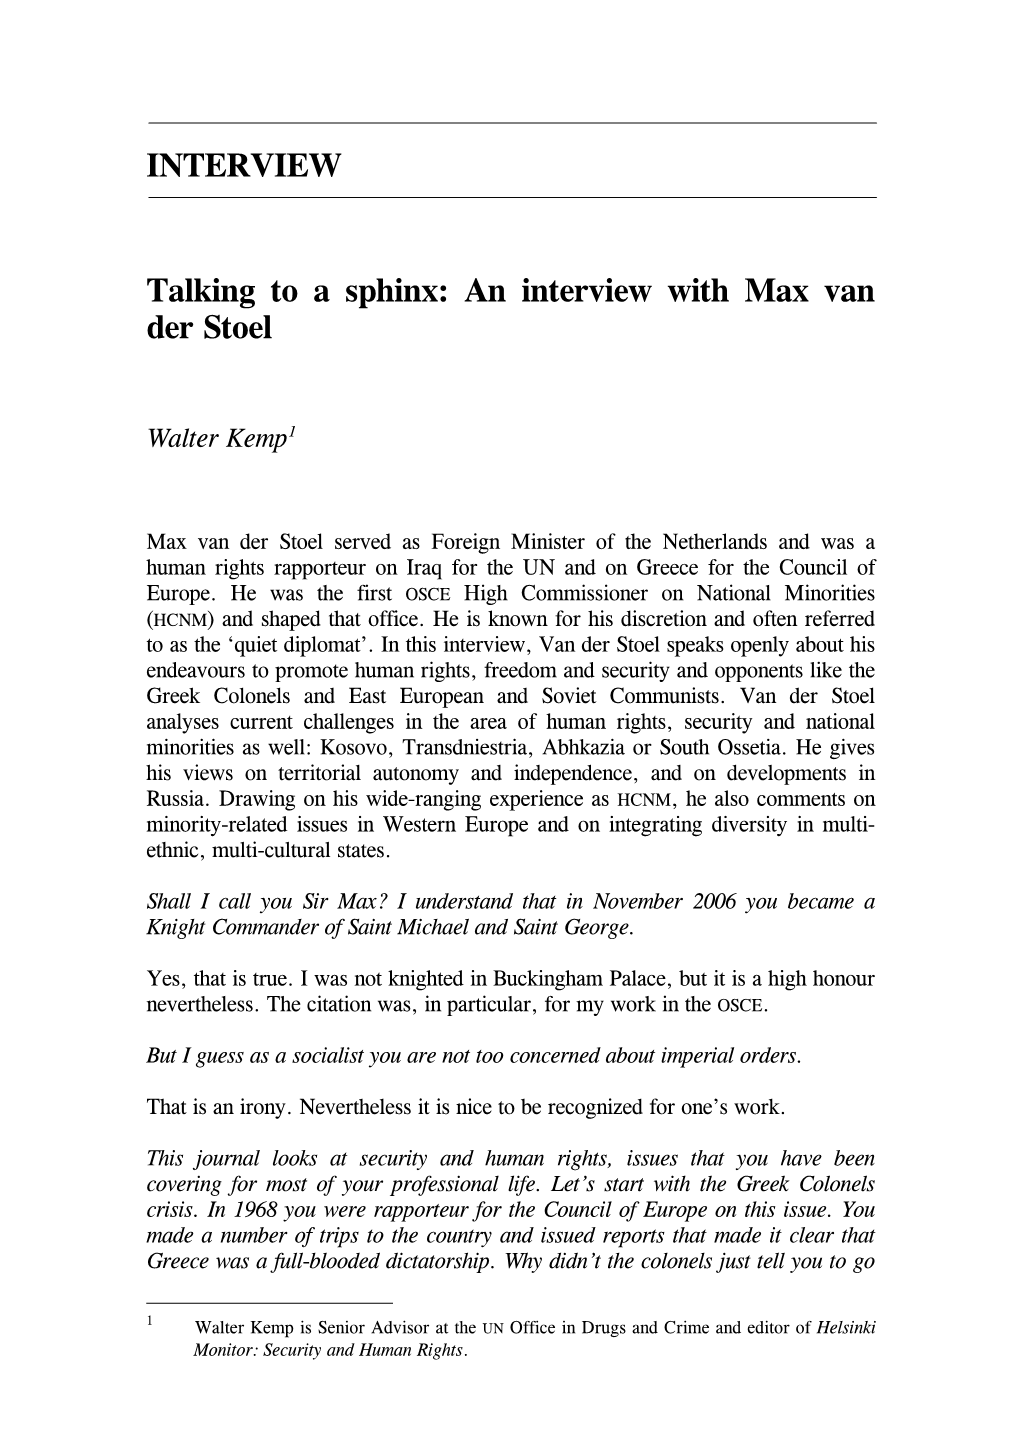 An Interview with Max Van Der Stoel